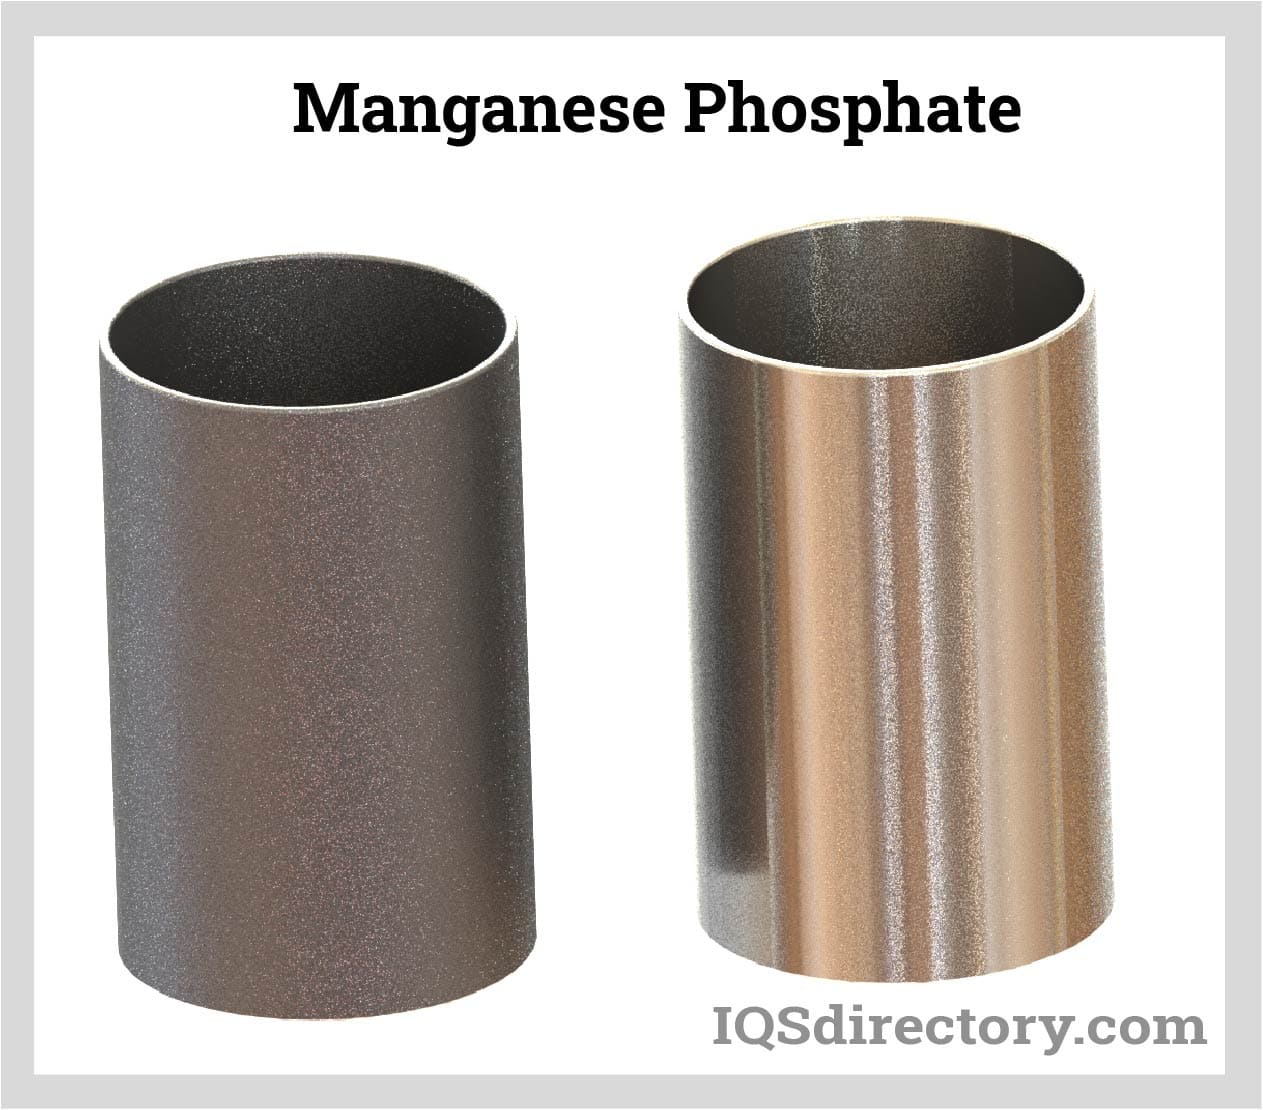 Manganese Phosphate